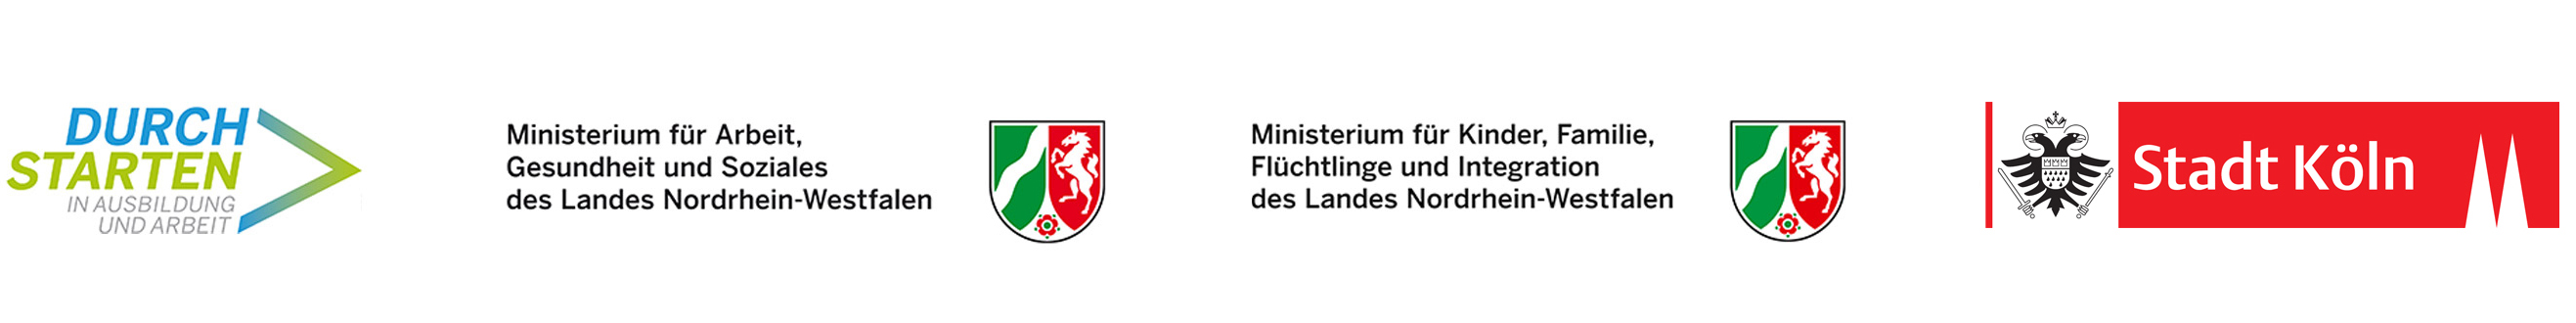 AWO Mittelrhein – Fachdienste Migration und Integration – gefördert durch – Durch Starten – Ministerium – Stadt Köln – Logo